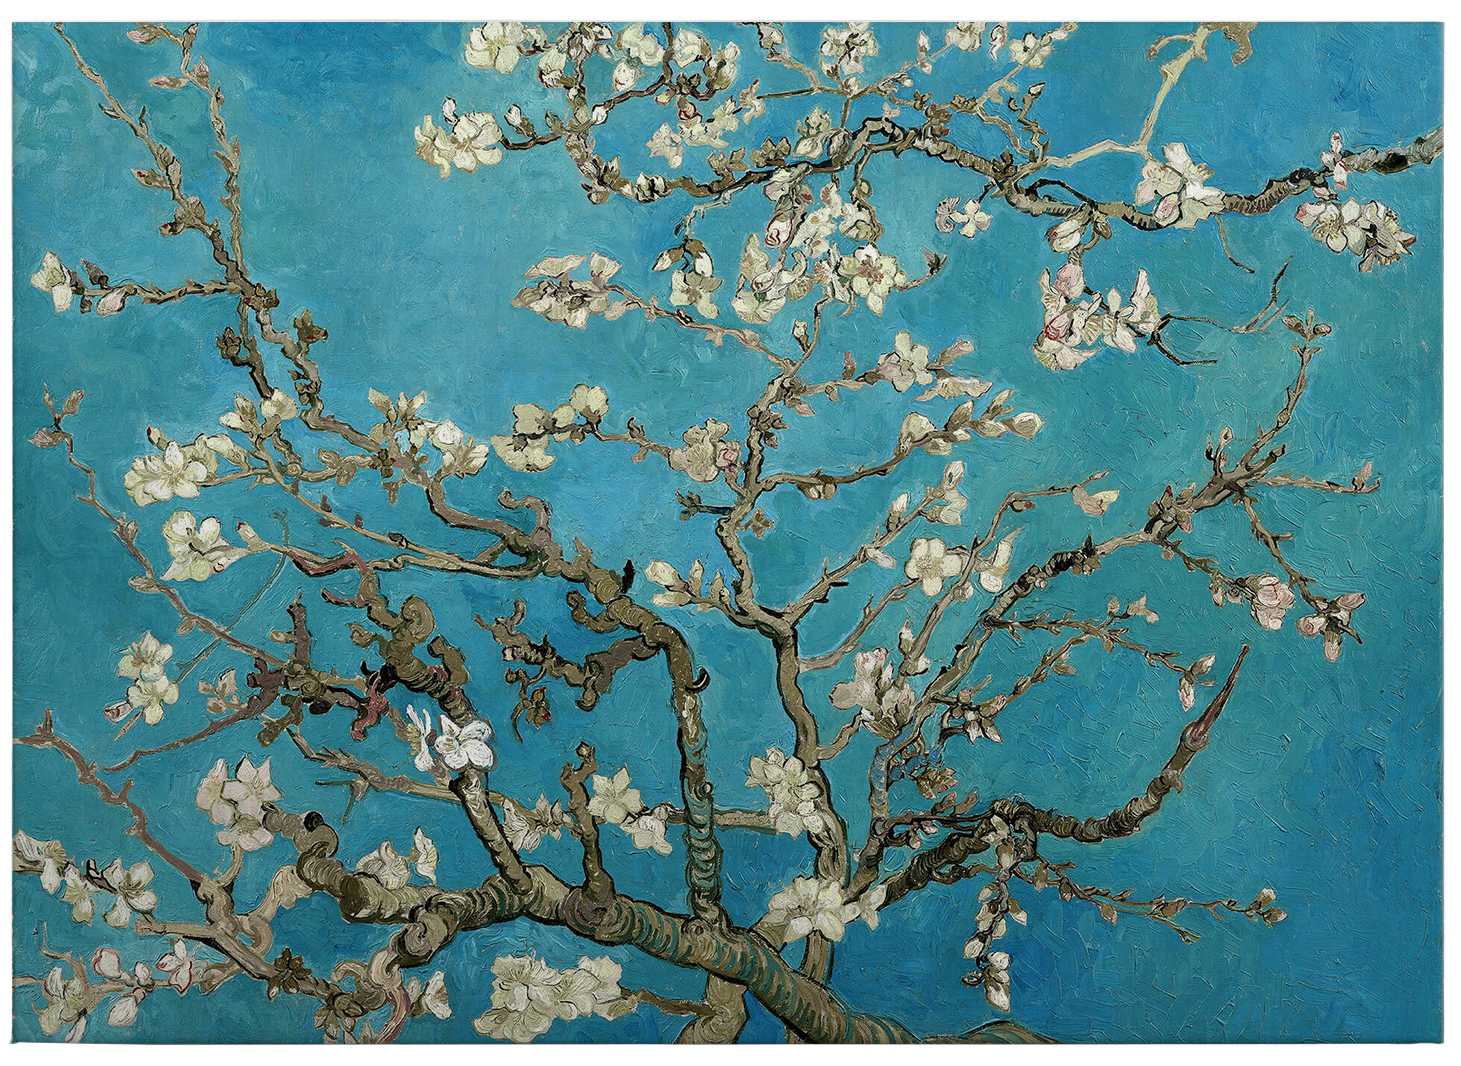             Canvas schilderij "Amandelbloesems" van Van Gogh - 0.70 m x 0.50 m
        